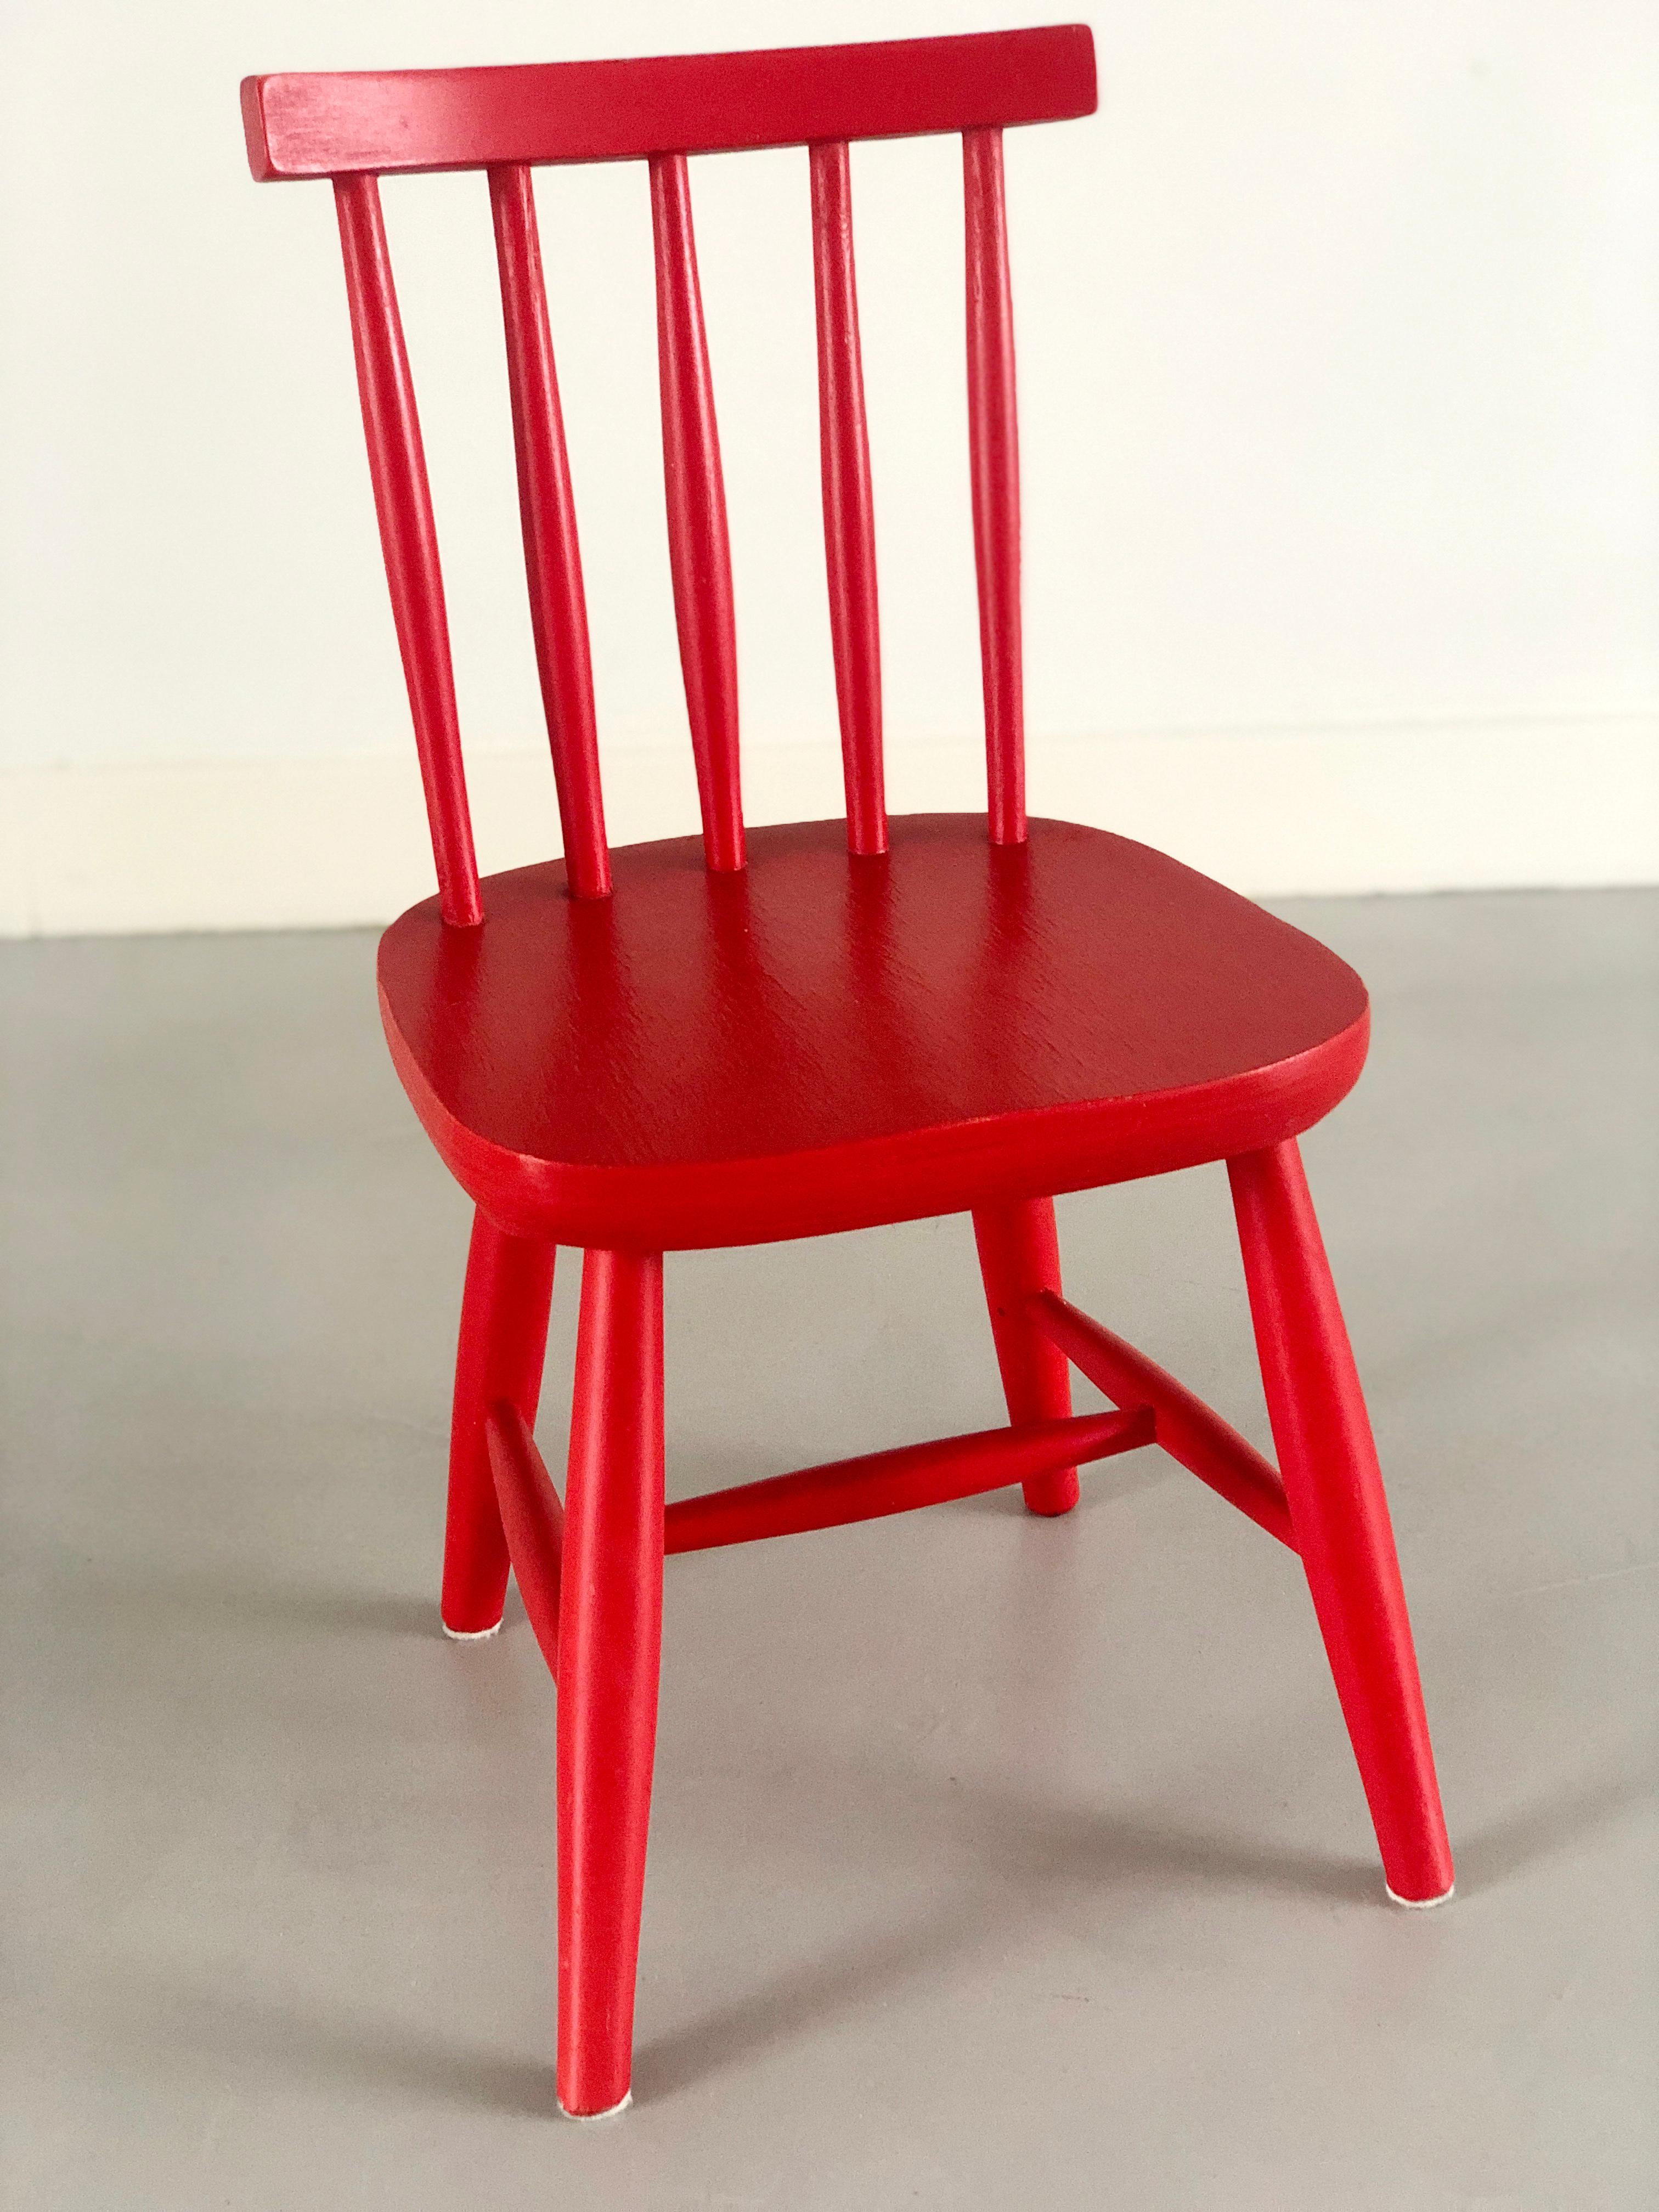 Roter Kinderstuhl aus Holz im skandinavischen Poul Volther-Stil, 1960er Jahre.
Hübscher roter Vintage-Stuhl aus den Sechzigern. 
Möglicherweise von dem dänischen Designer Poul Volther. 
Vollständig original mit schönem Craquelé im Lack.